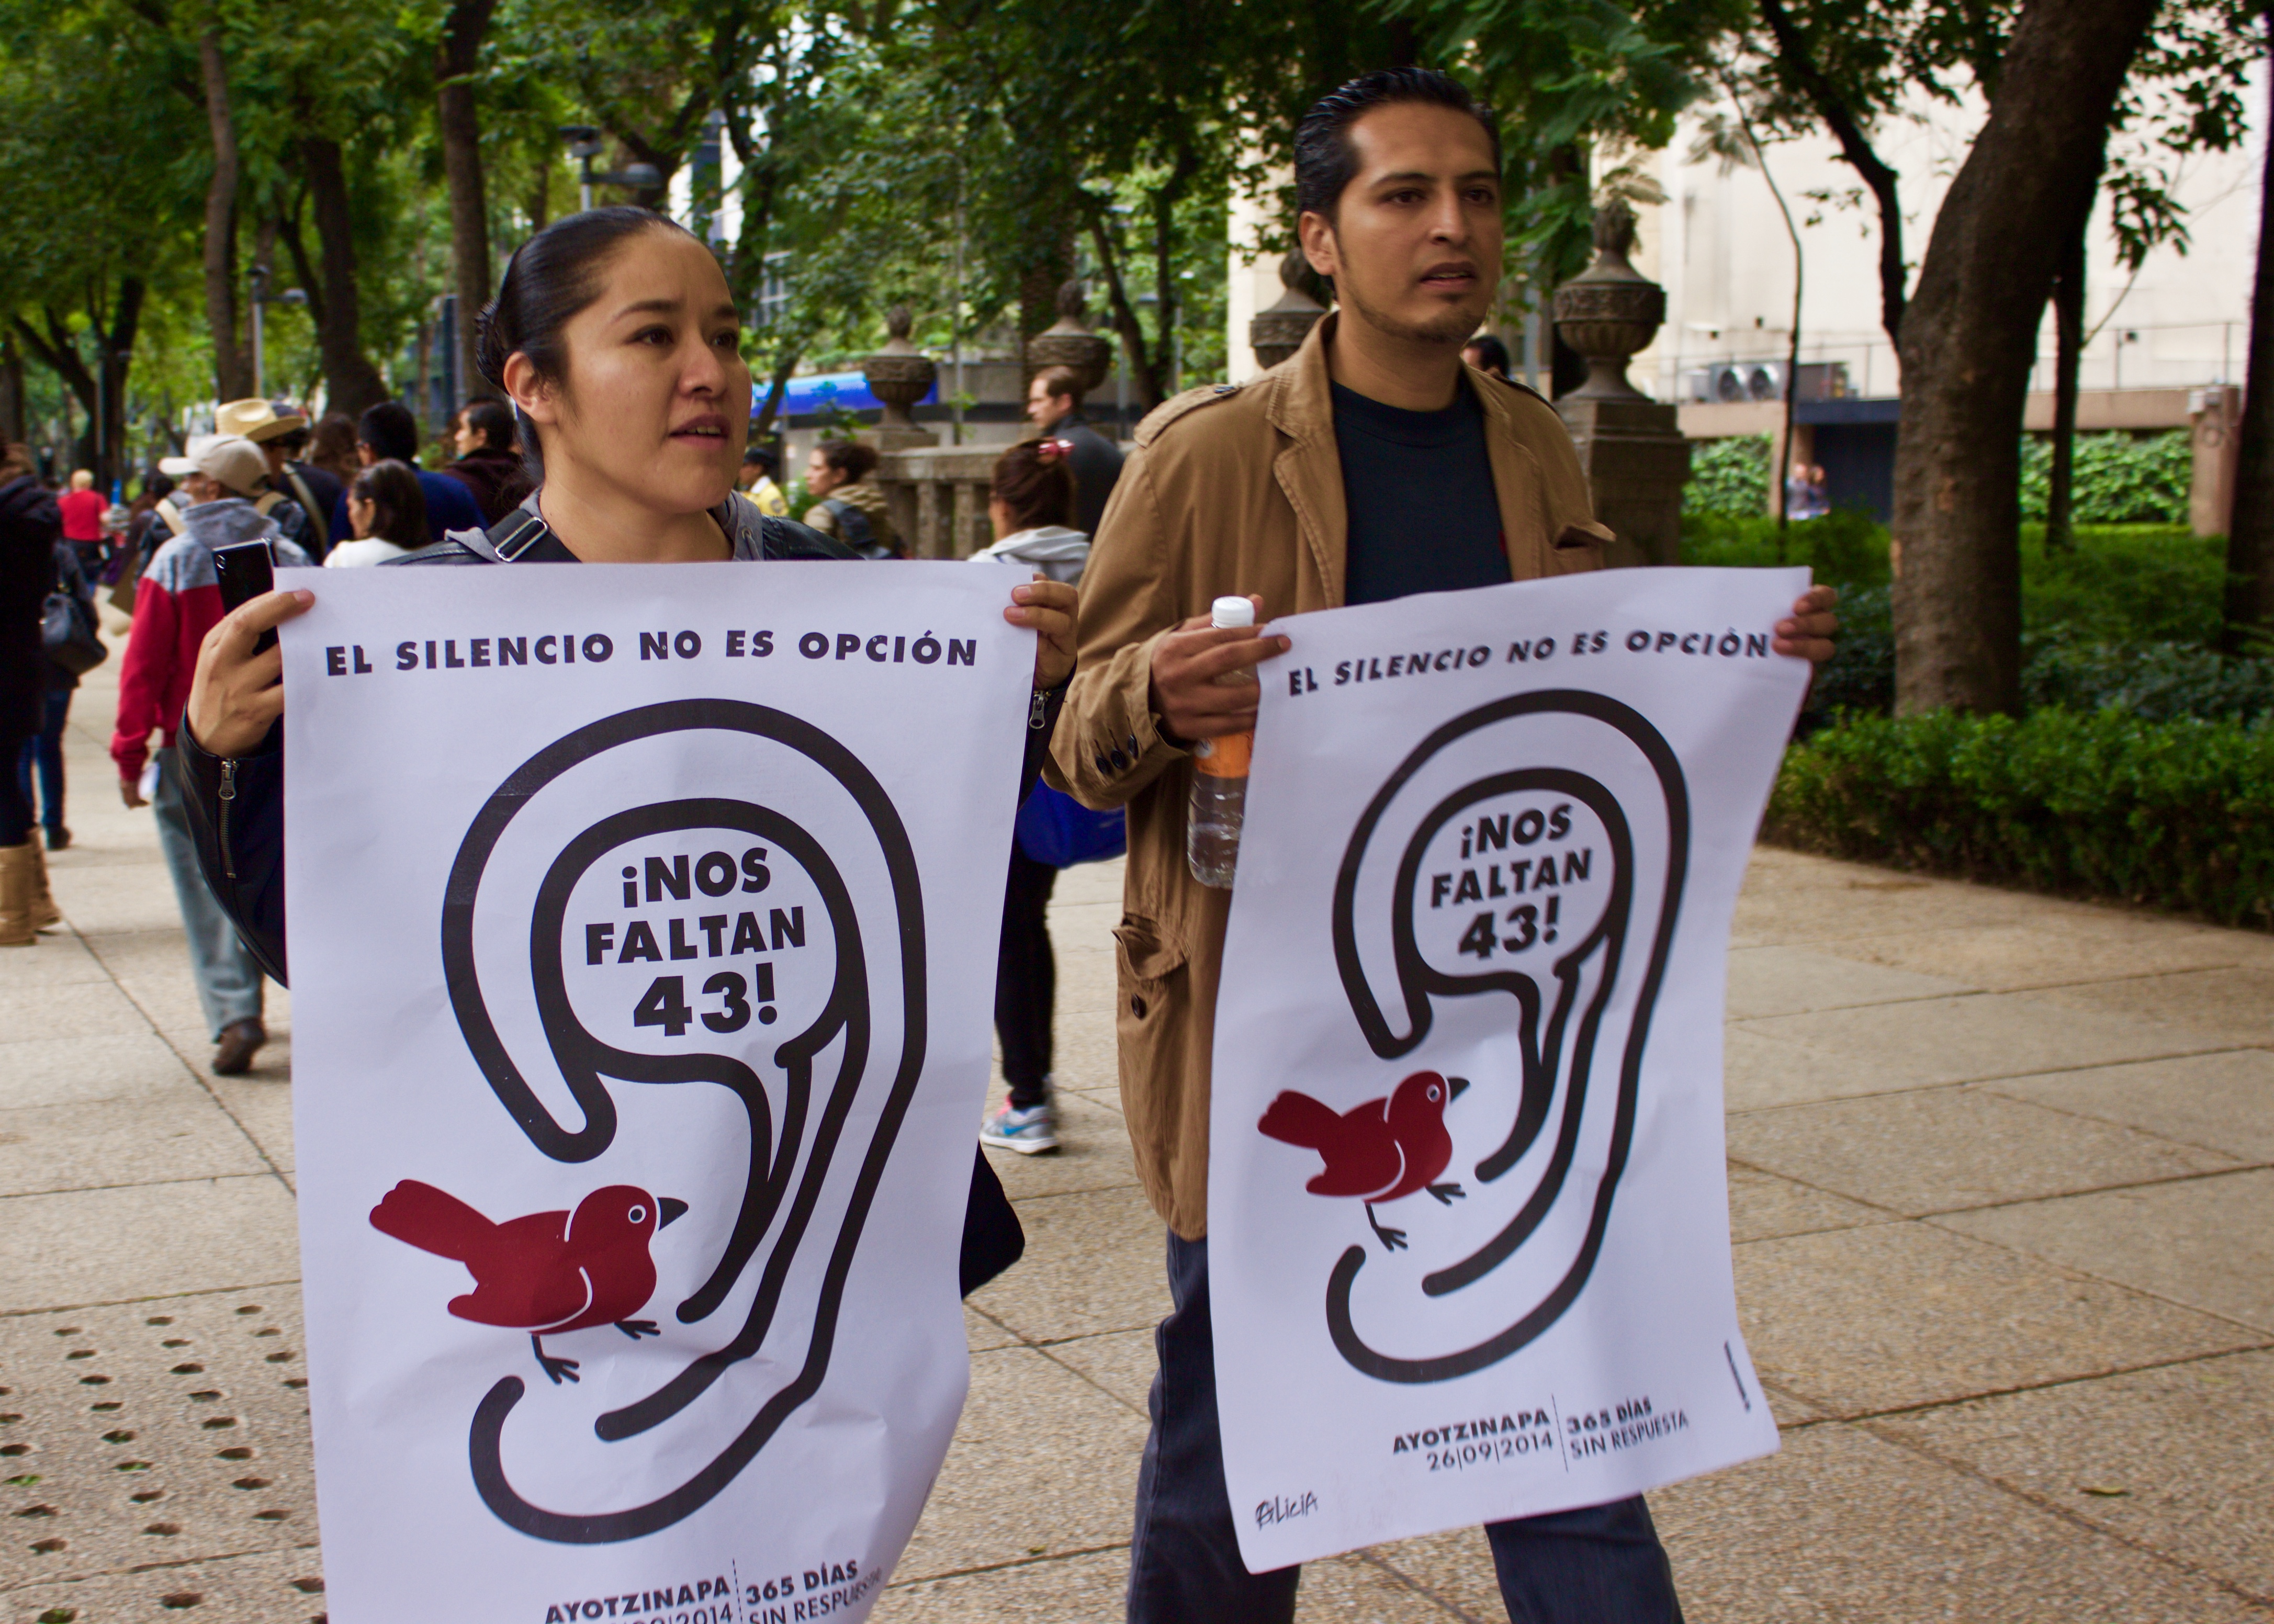 De #YoSoy132 a Ayotzinapa: La criminalización de la juventud bajo Enrique Peña Nieto